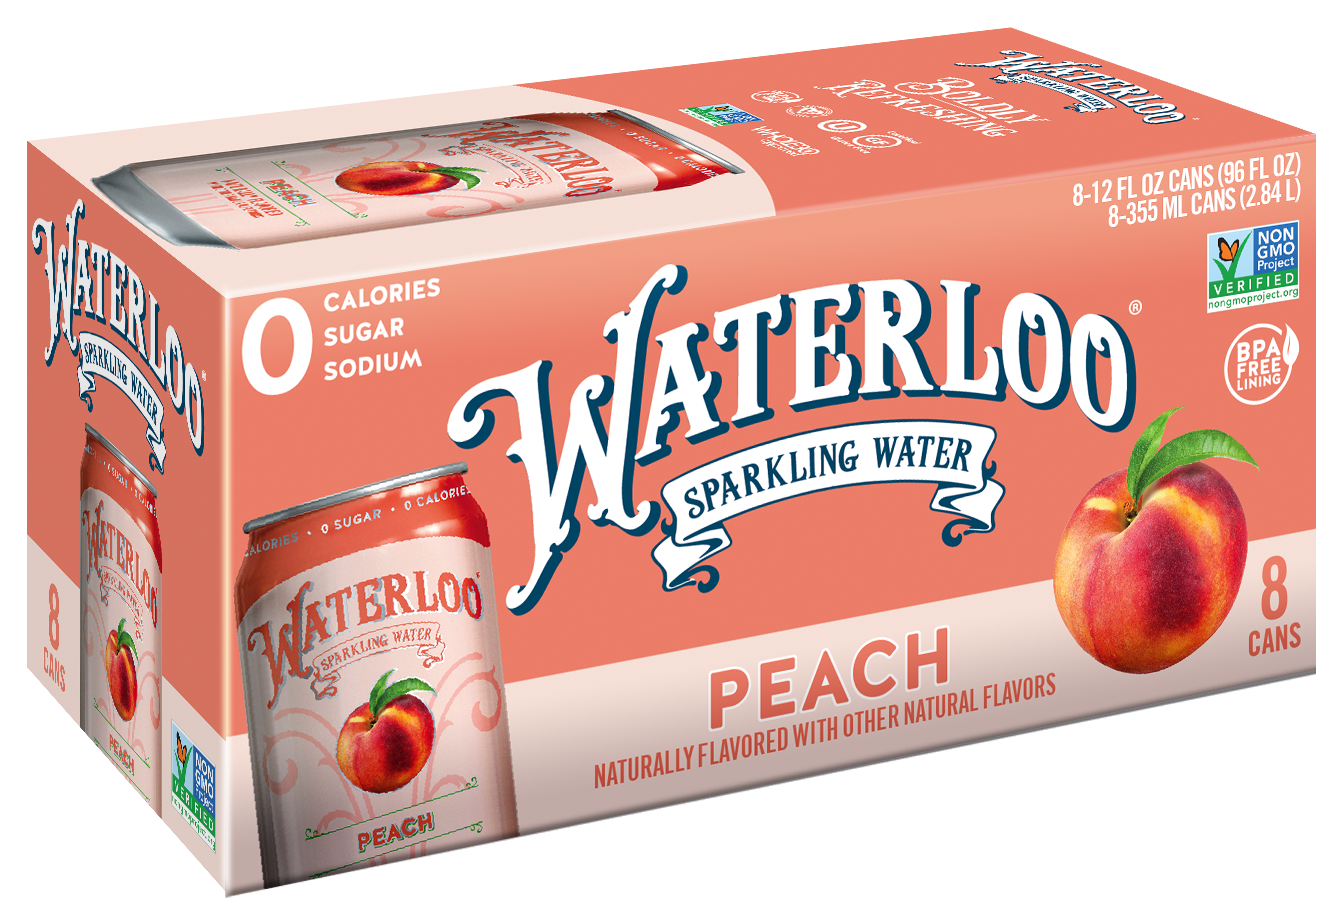 Waterloo Peach Sparkling Water 3 innerpacks per case 96.0 fl